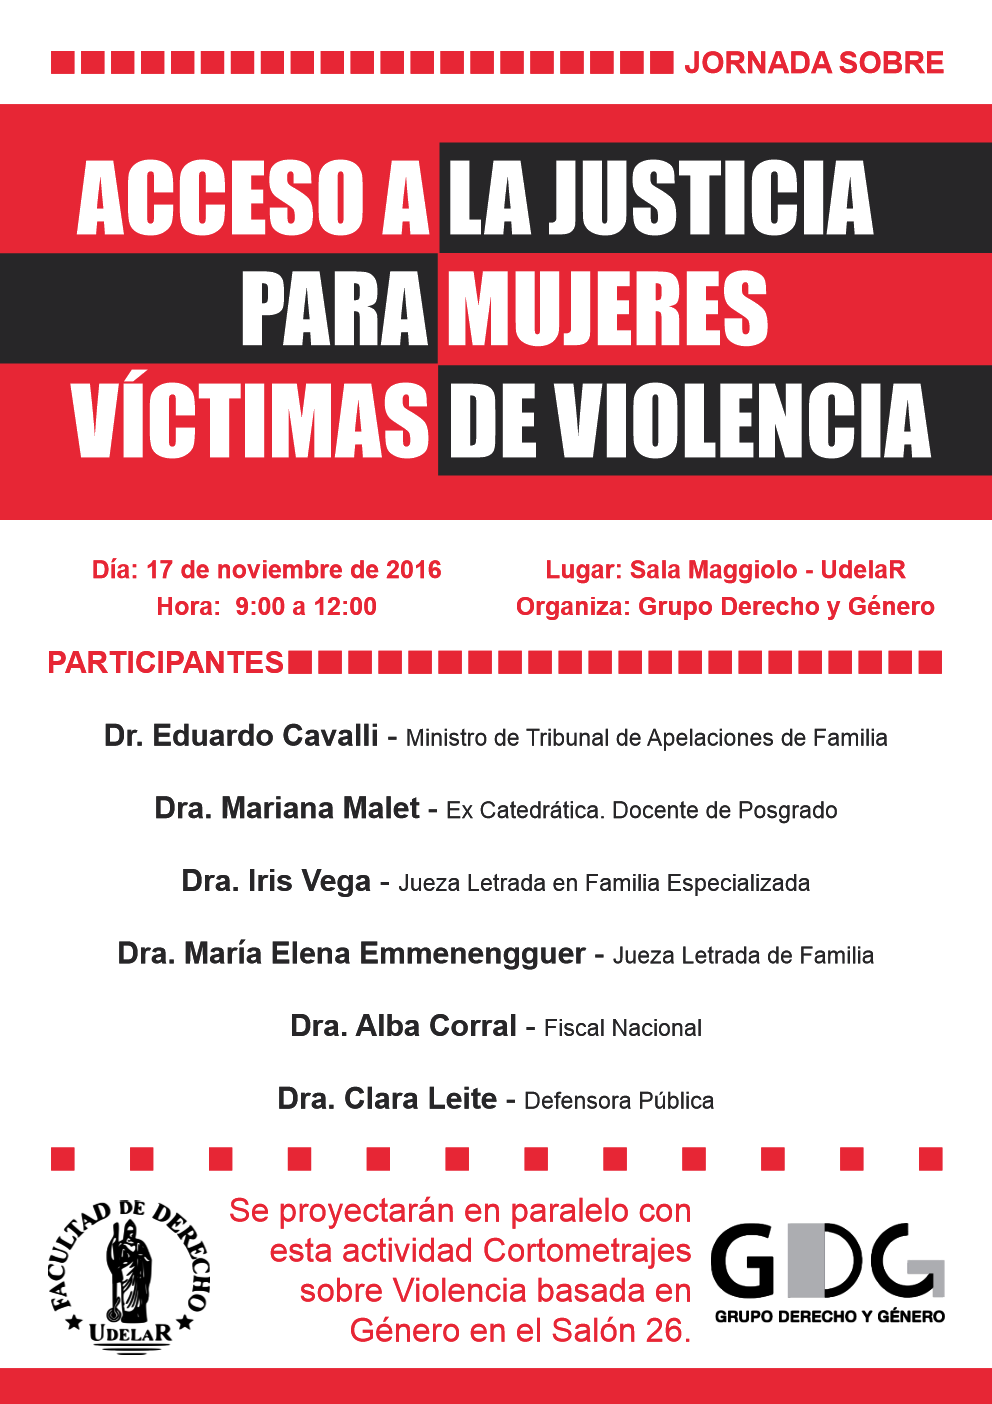 Acceso a la justicia para mujeres víctimas de violencia